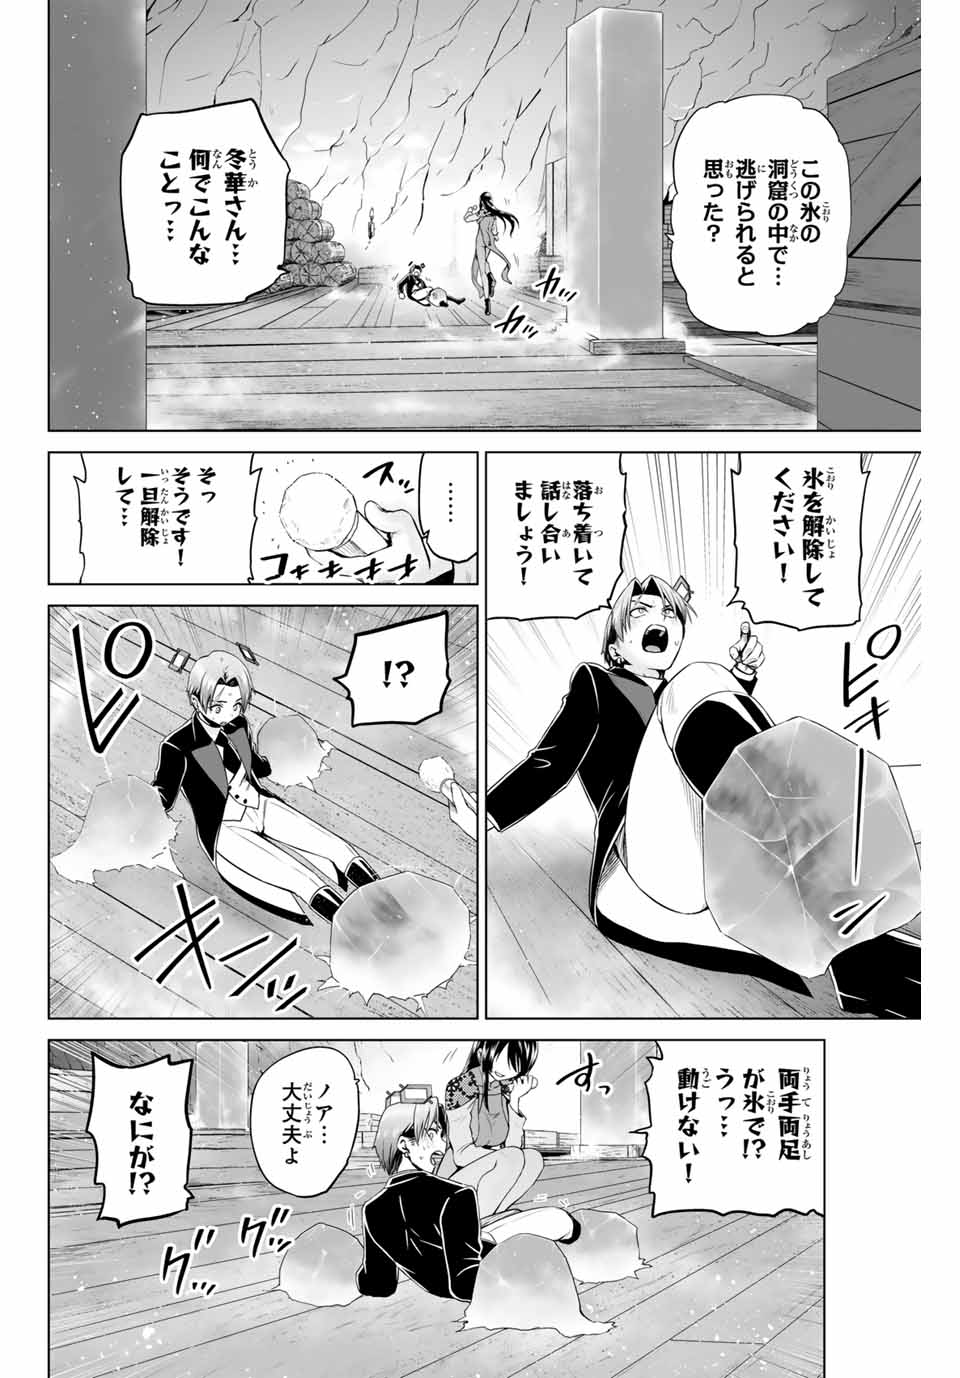 Gunshin No Takuto - Chapter 18 - Page 2